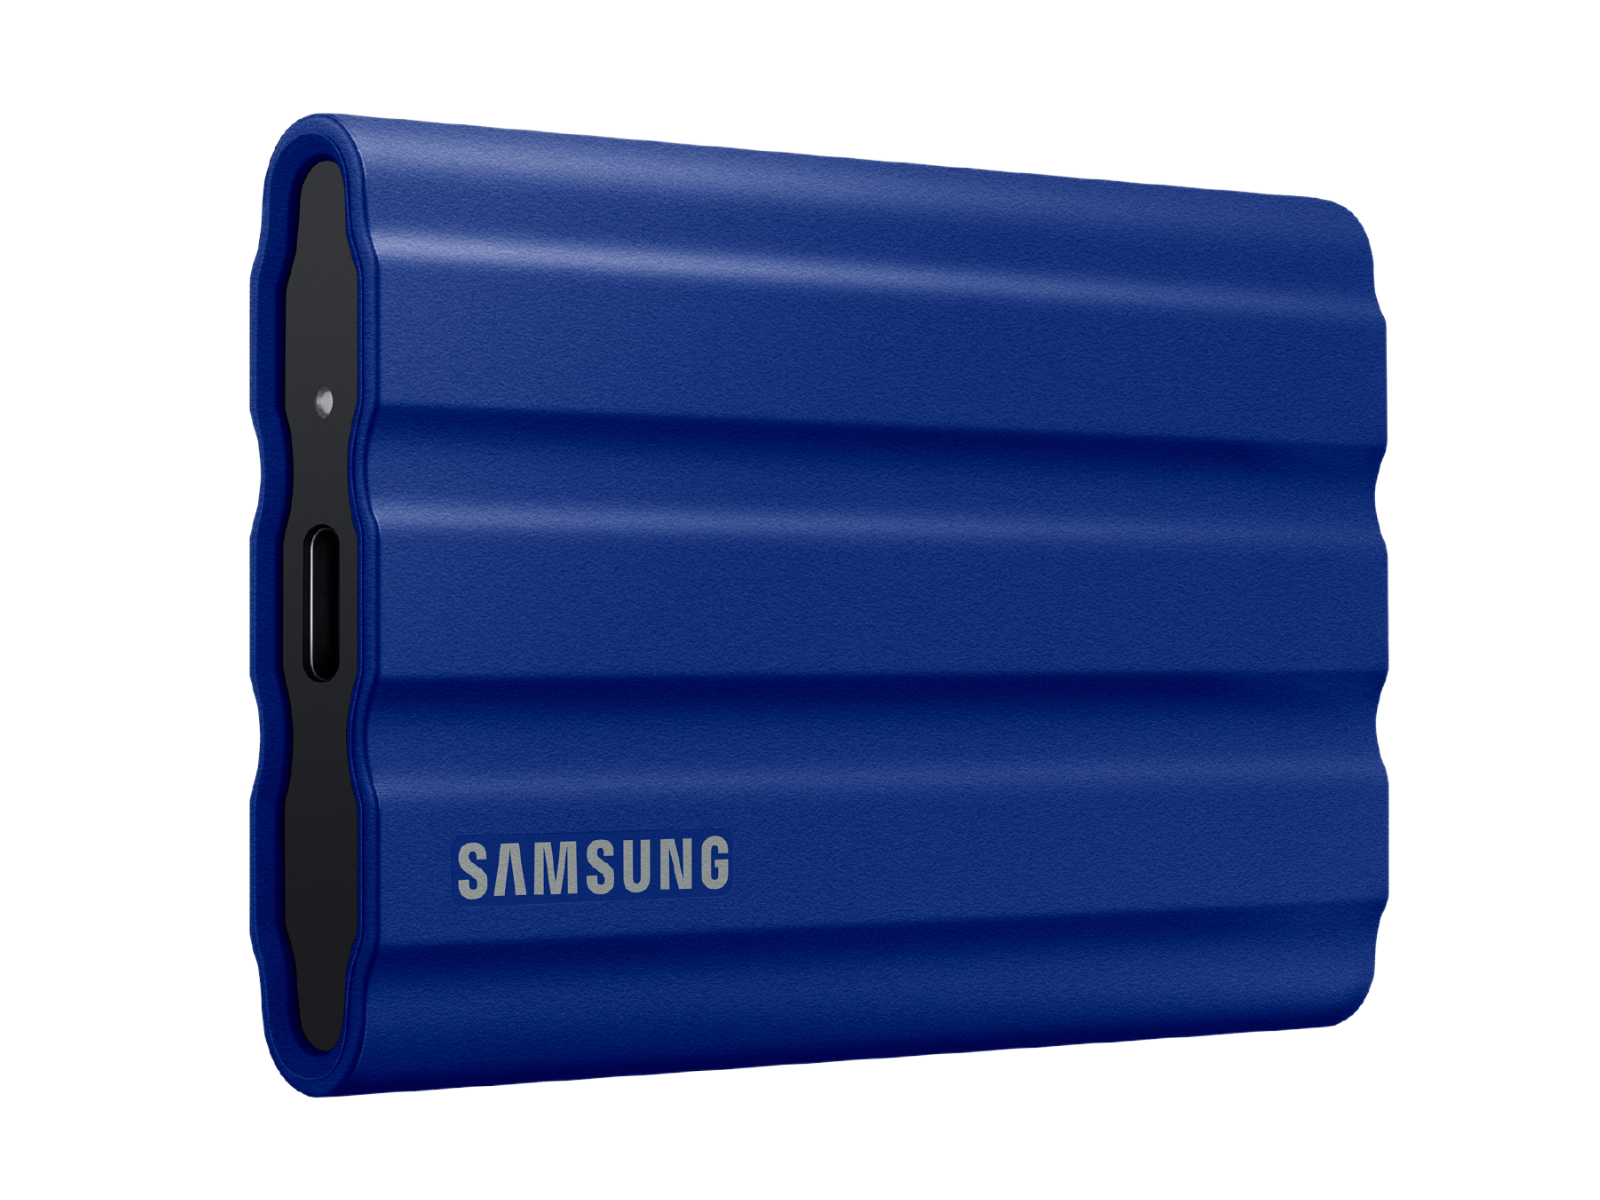 Portable SSD T7 Shield USB 3.2 2TB (Blue) Memory & Storage - MU-PE2T0R/AM